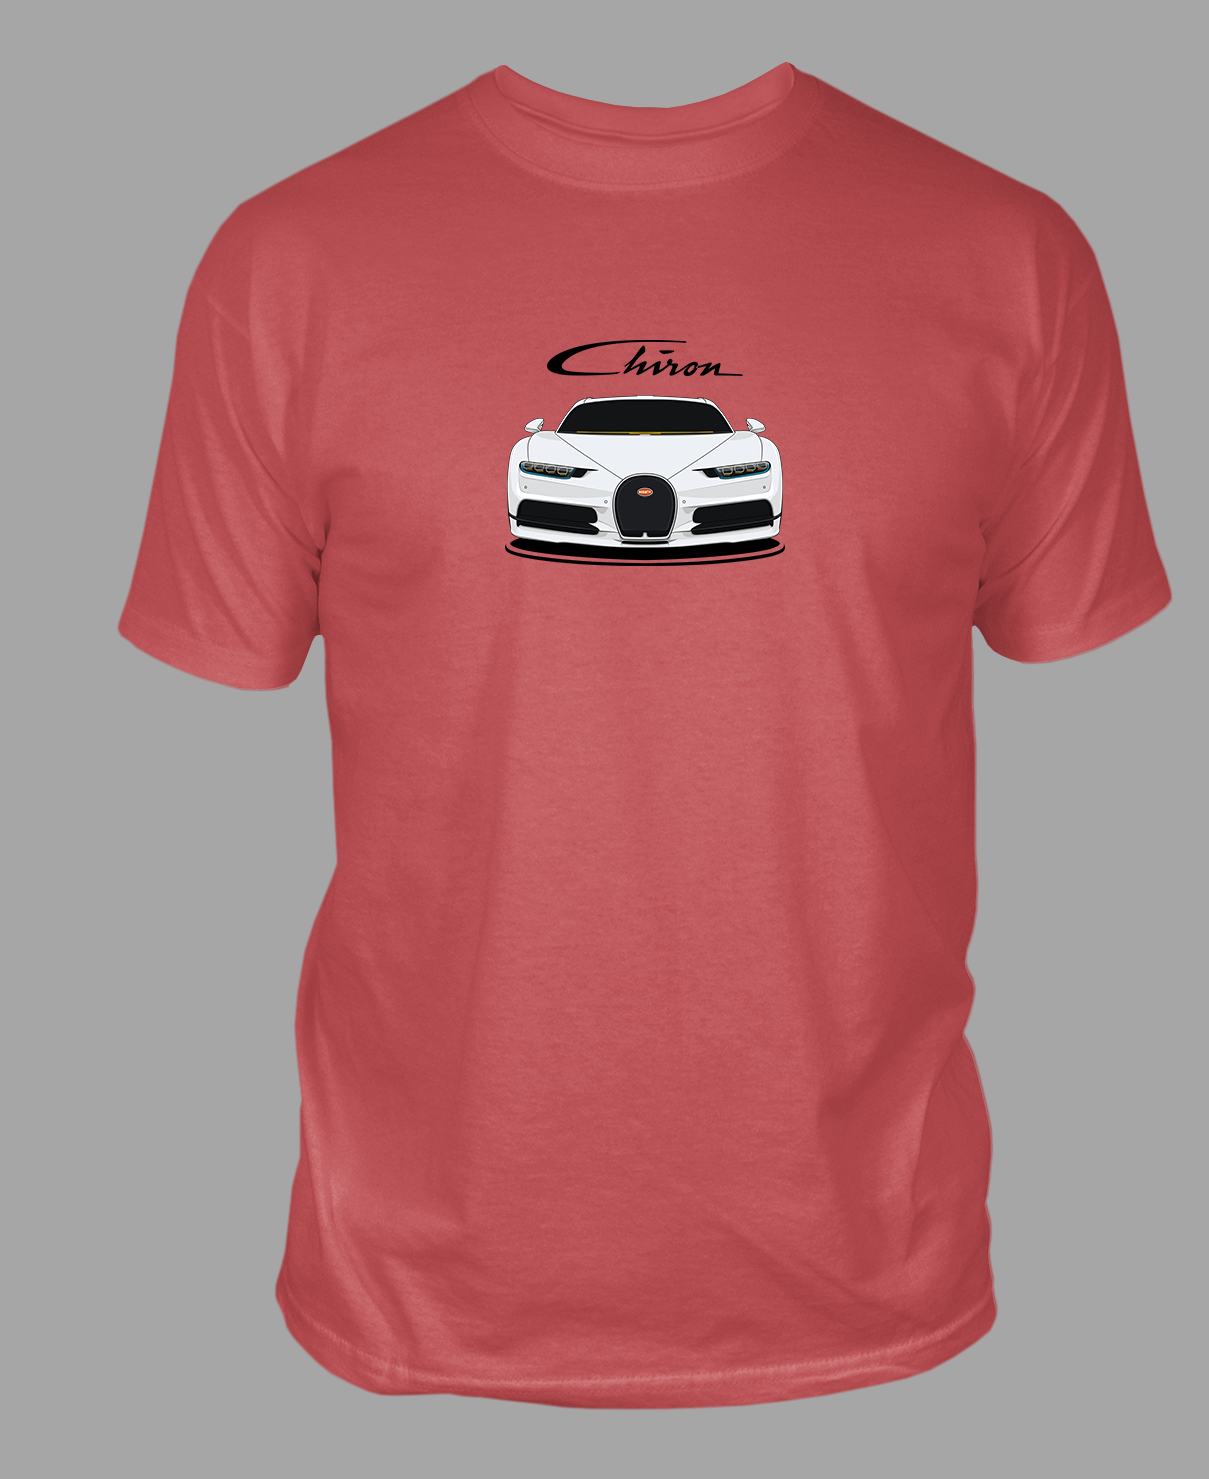 White Bugatti – Chiron T-shirt anzianidesigns